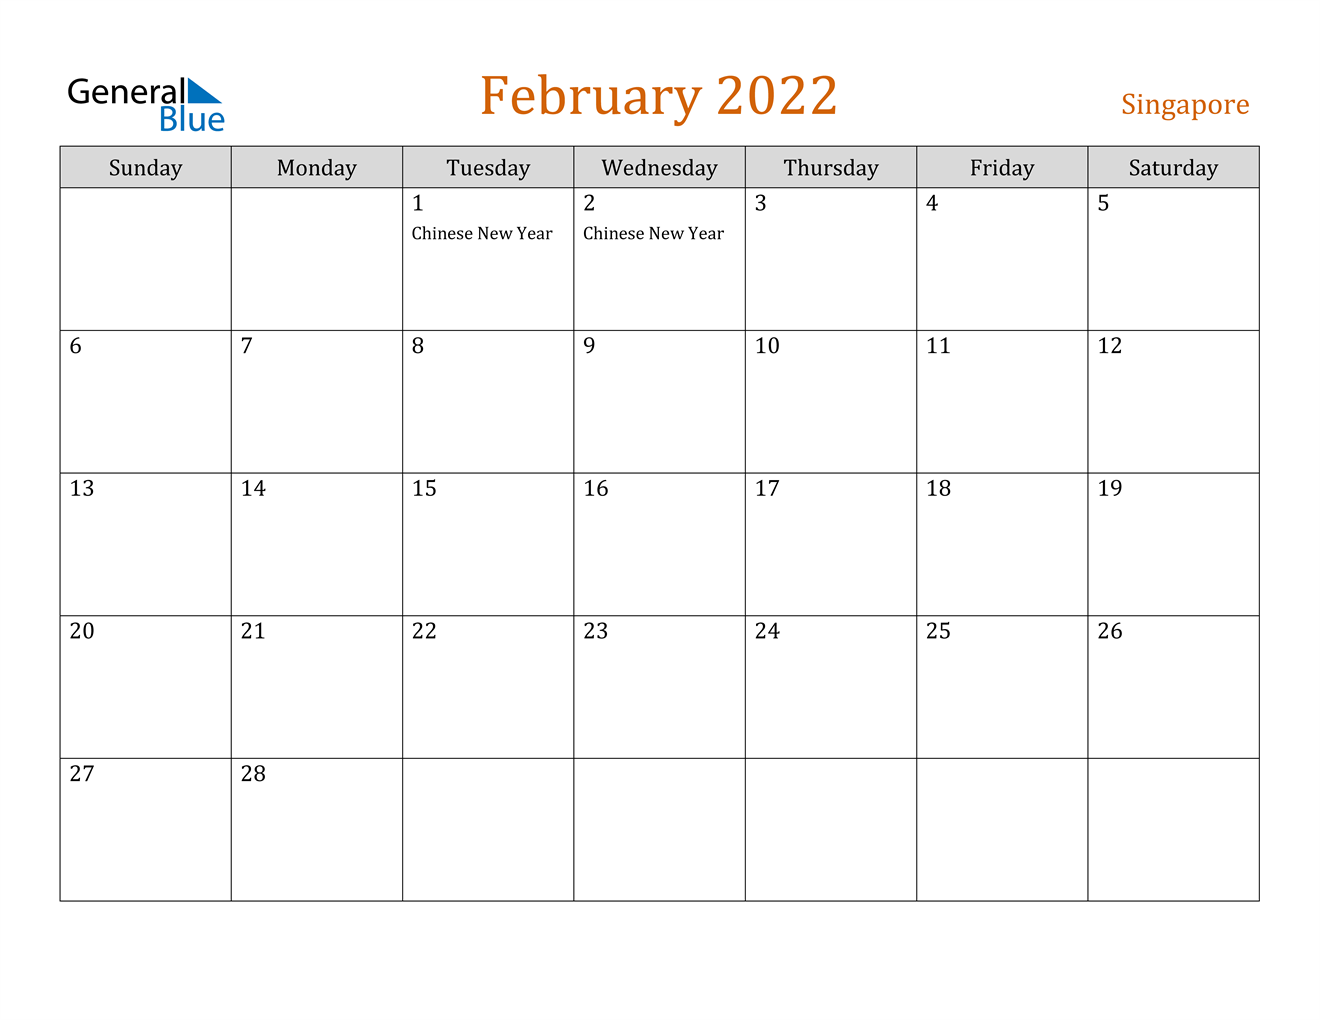 February 2022 Calendar - Singapore